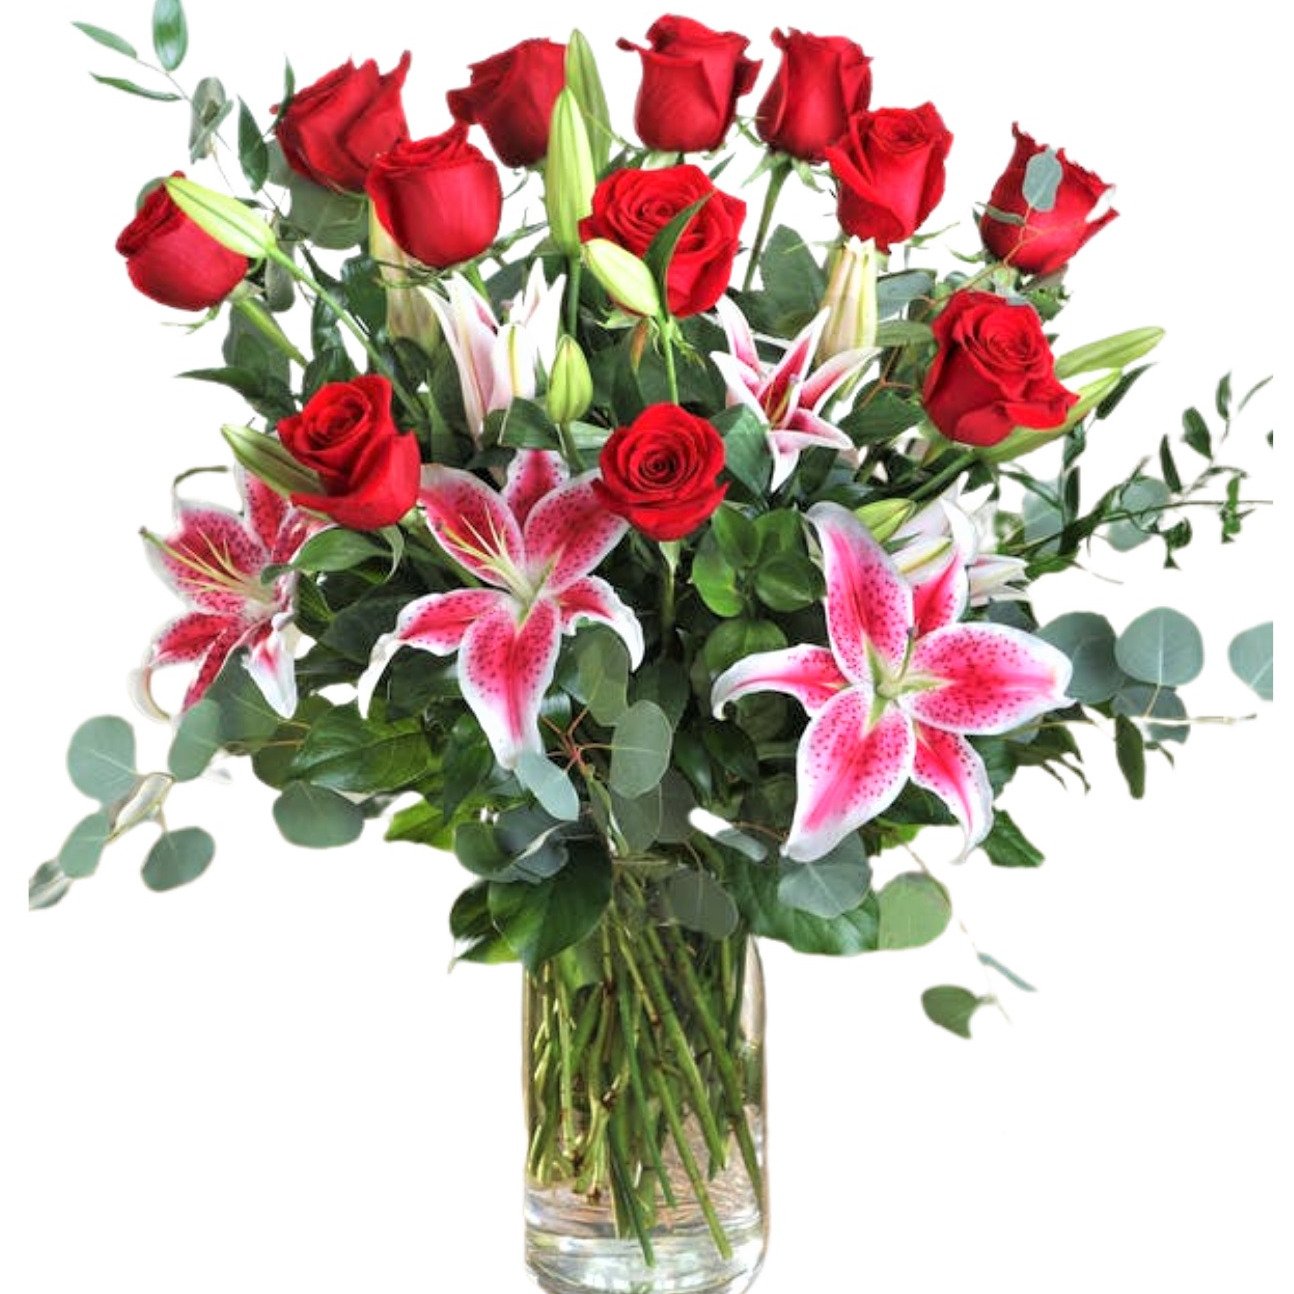 Especial Lírios e Luxuosas Rosas Vermelhas